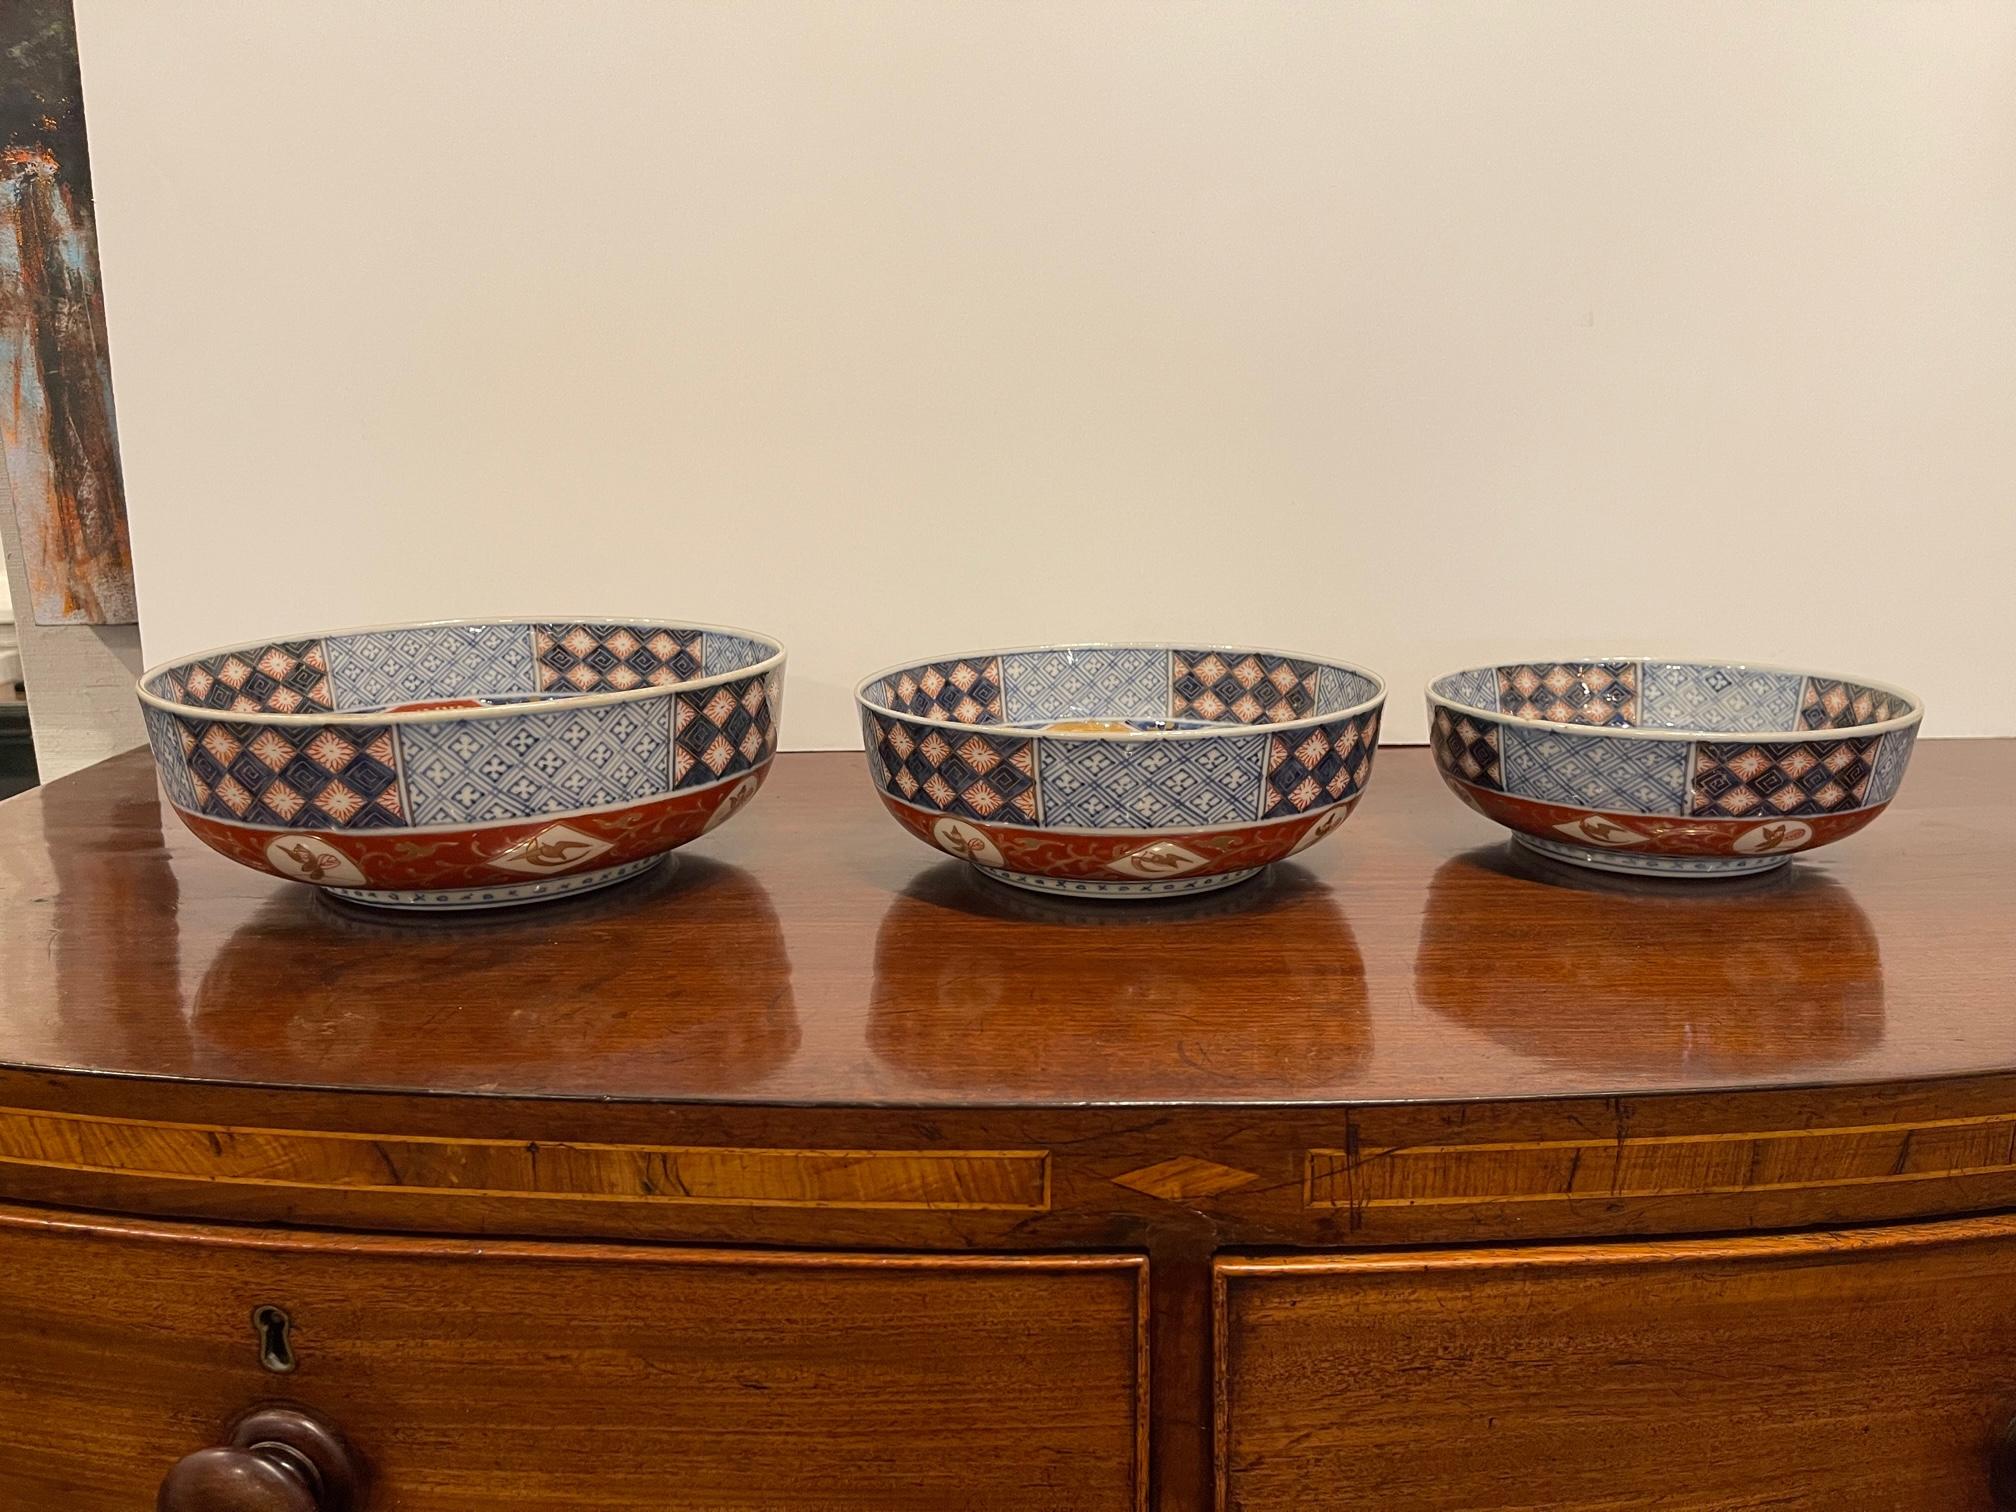 Set of three Japanese Imari Graduated porcelain bowls, 19th century. Sizes are 7.25